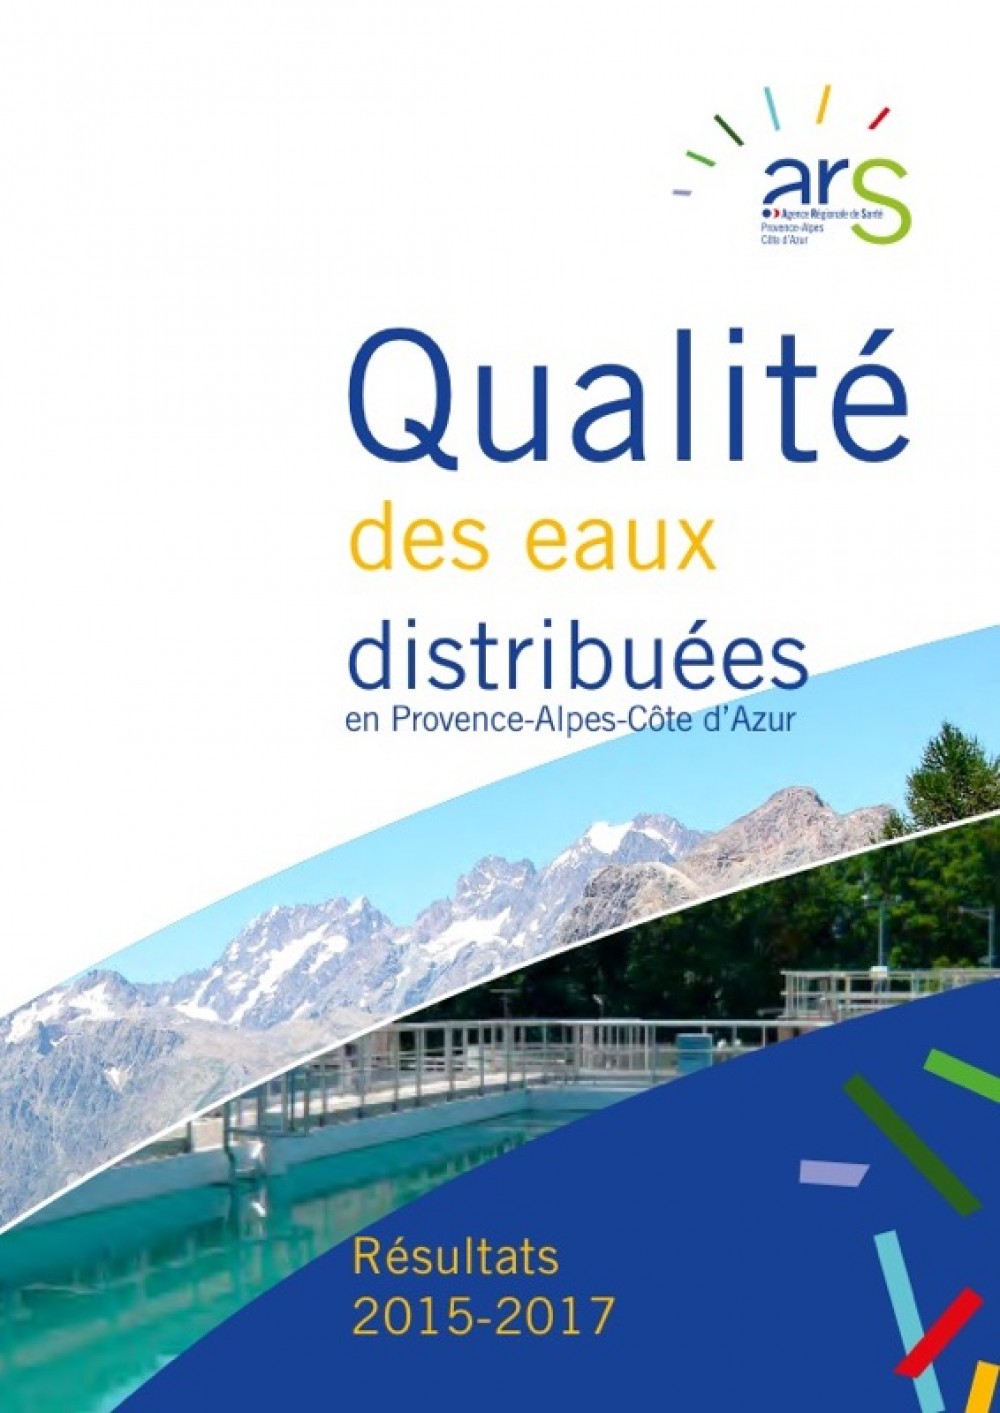 [Publication] Qualité des eaux distribuées en Provence-Alpes-Côte d'Azur - Résultats 2015-2017 - ARS PACA